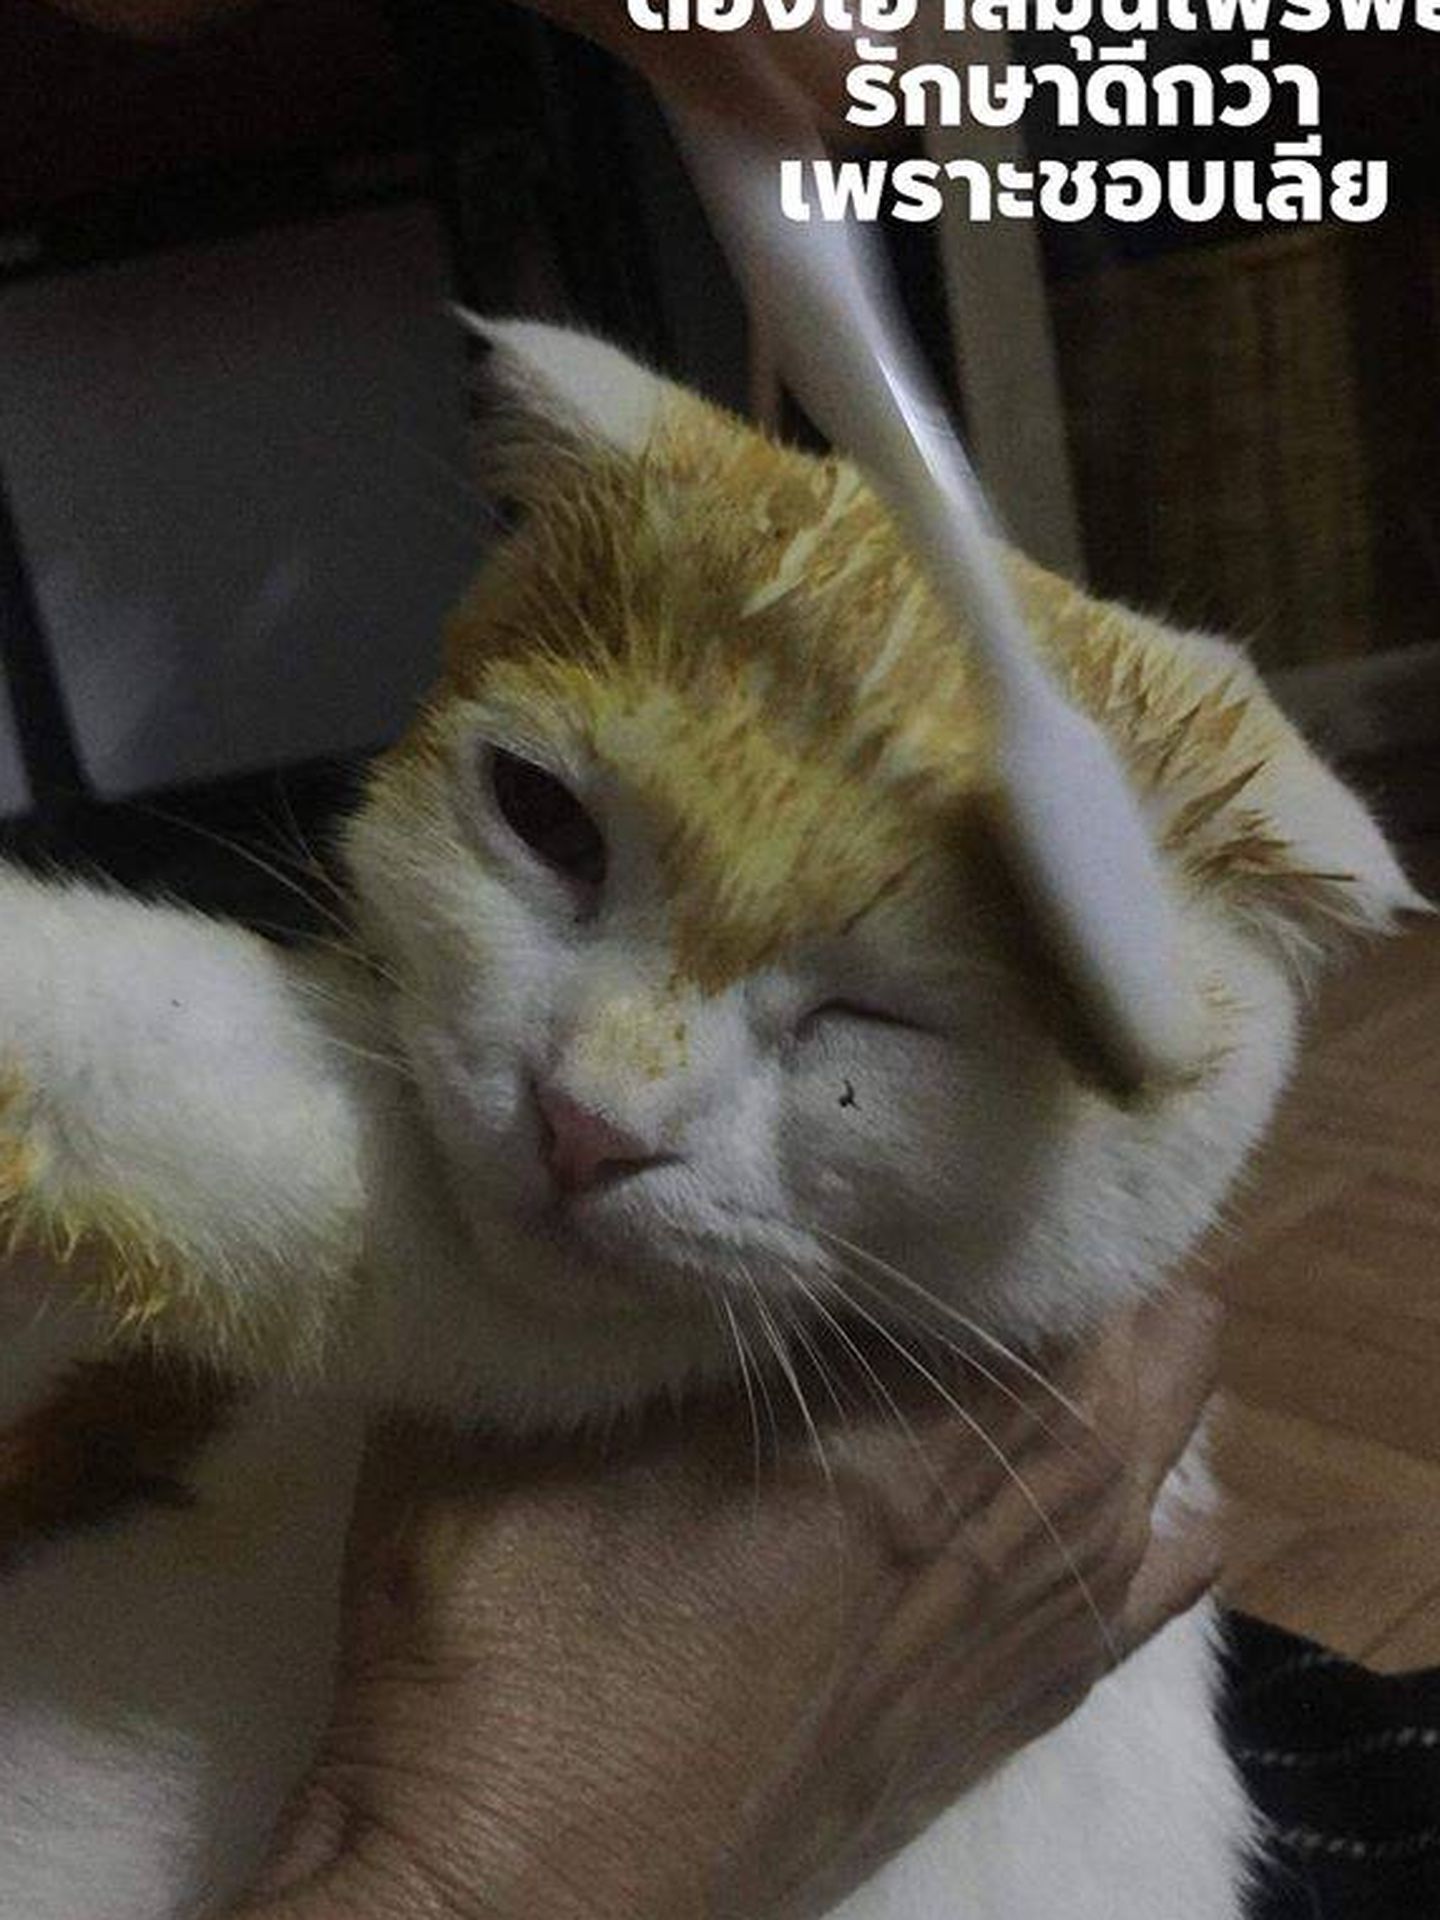 El gato, mientras que recibía la pasta sanadora que le volvió amarillo. Fuente: Reddit